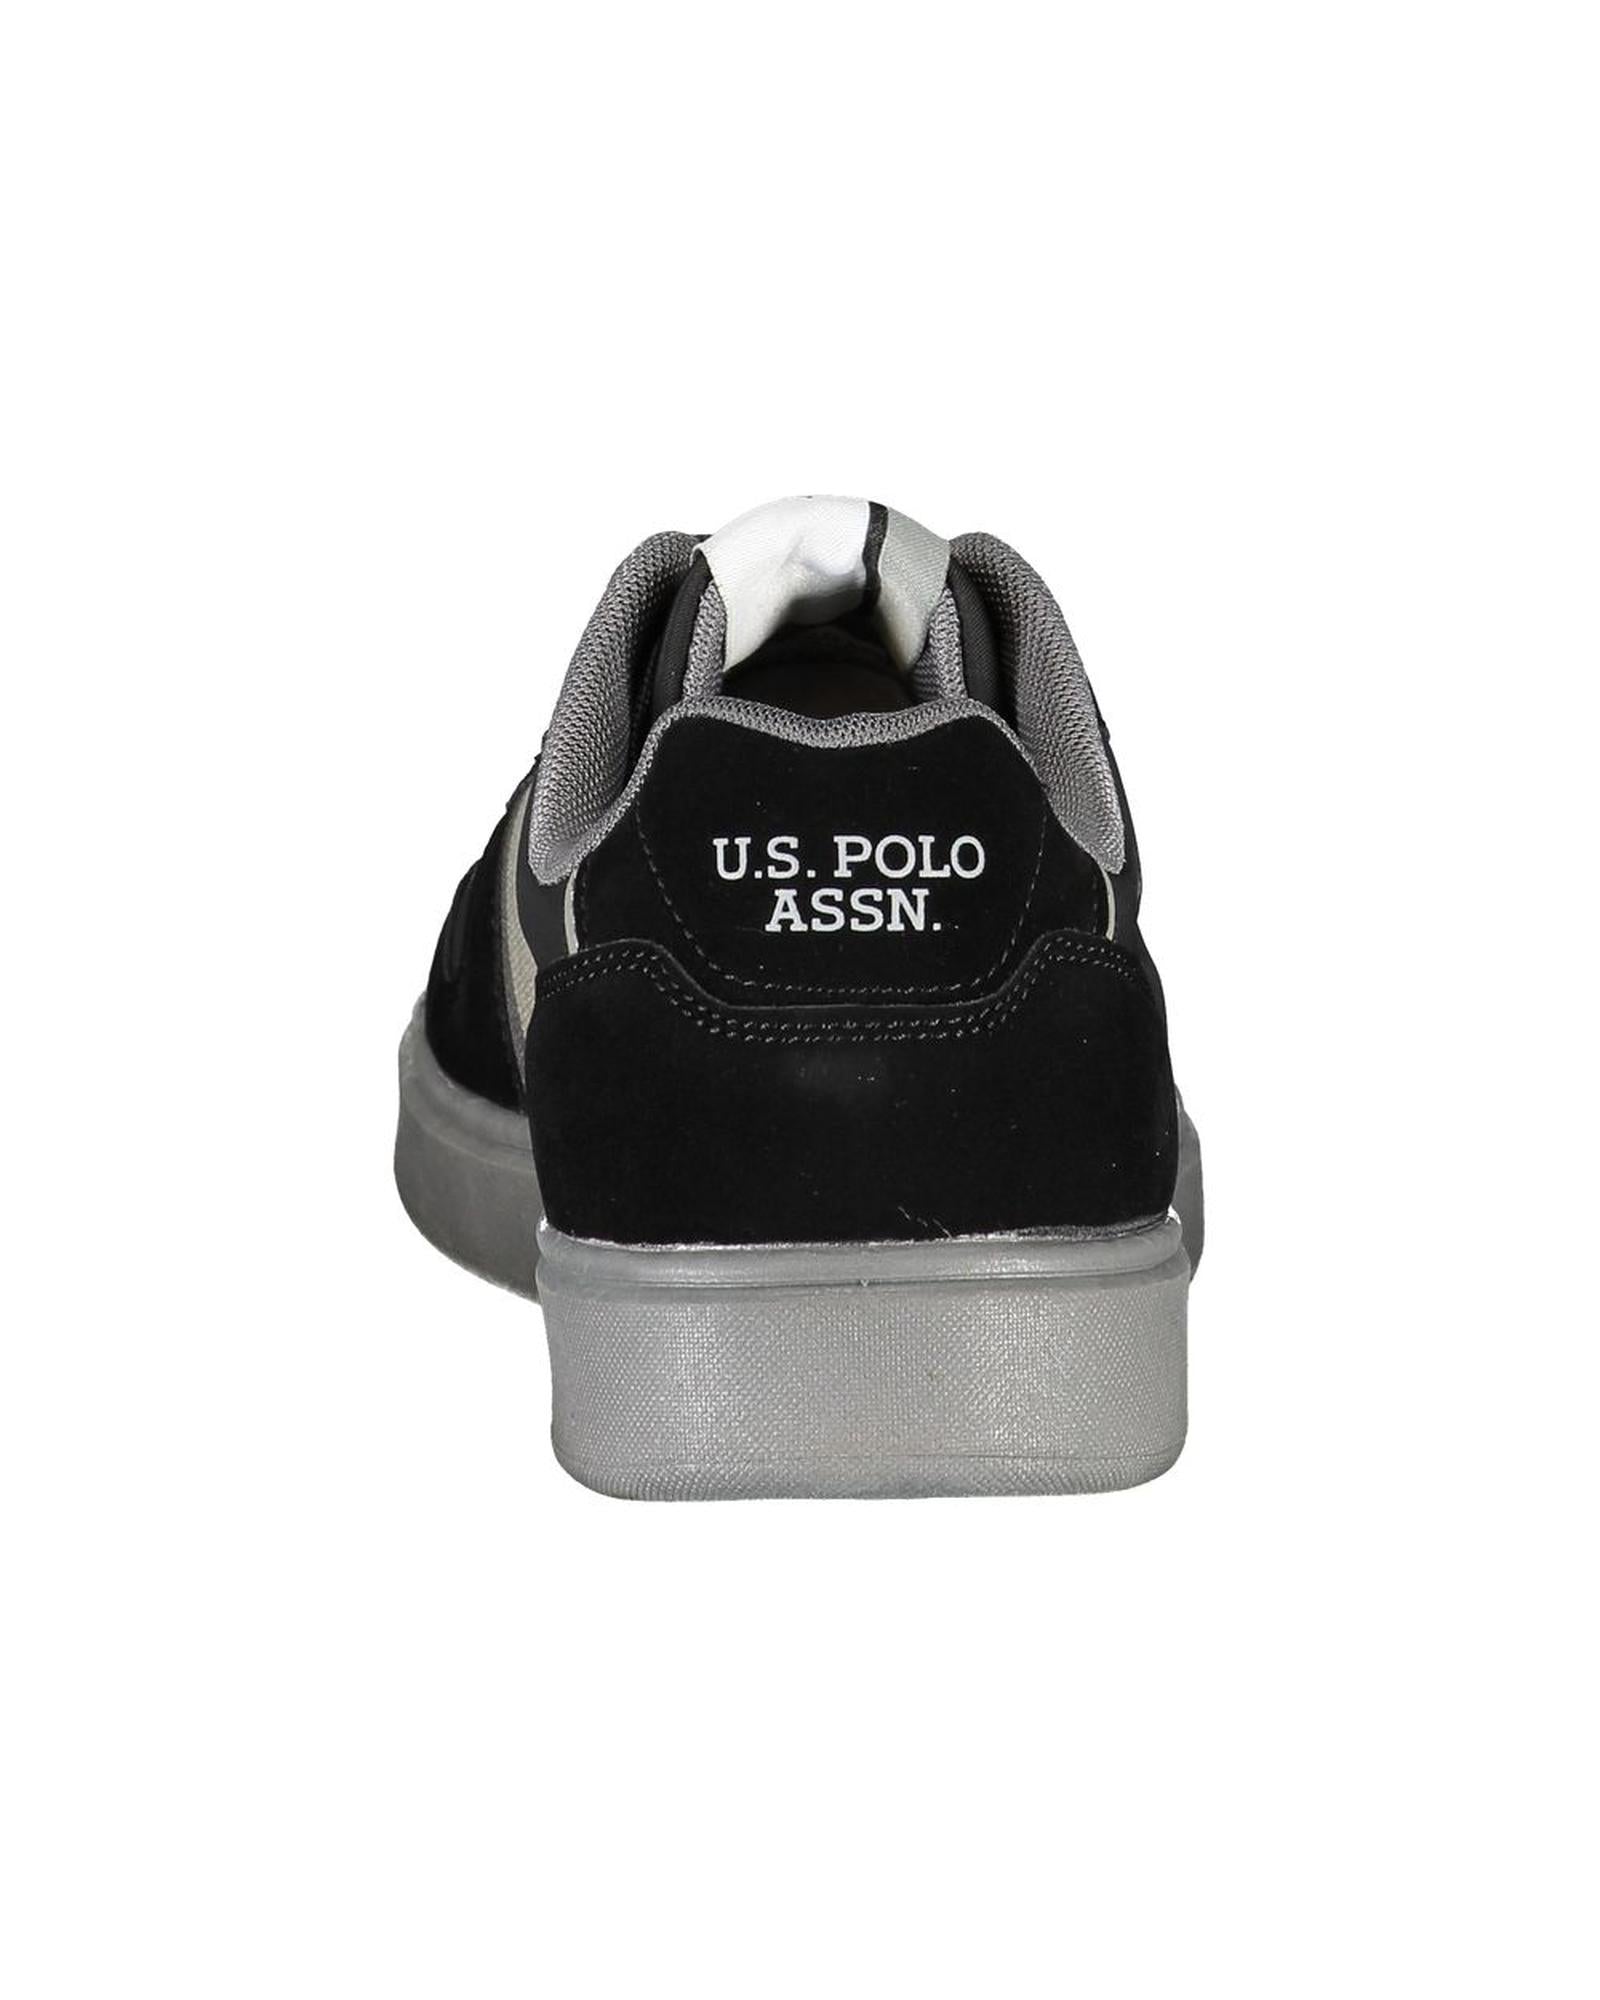 US POLO ASSN Men's Black Polyester Sneaker - 42 EU